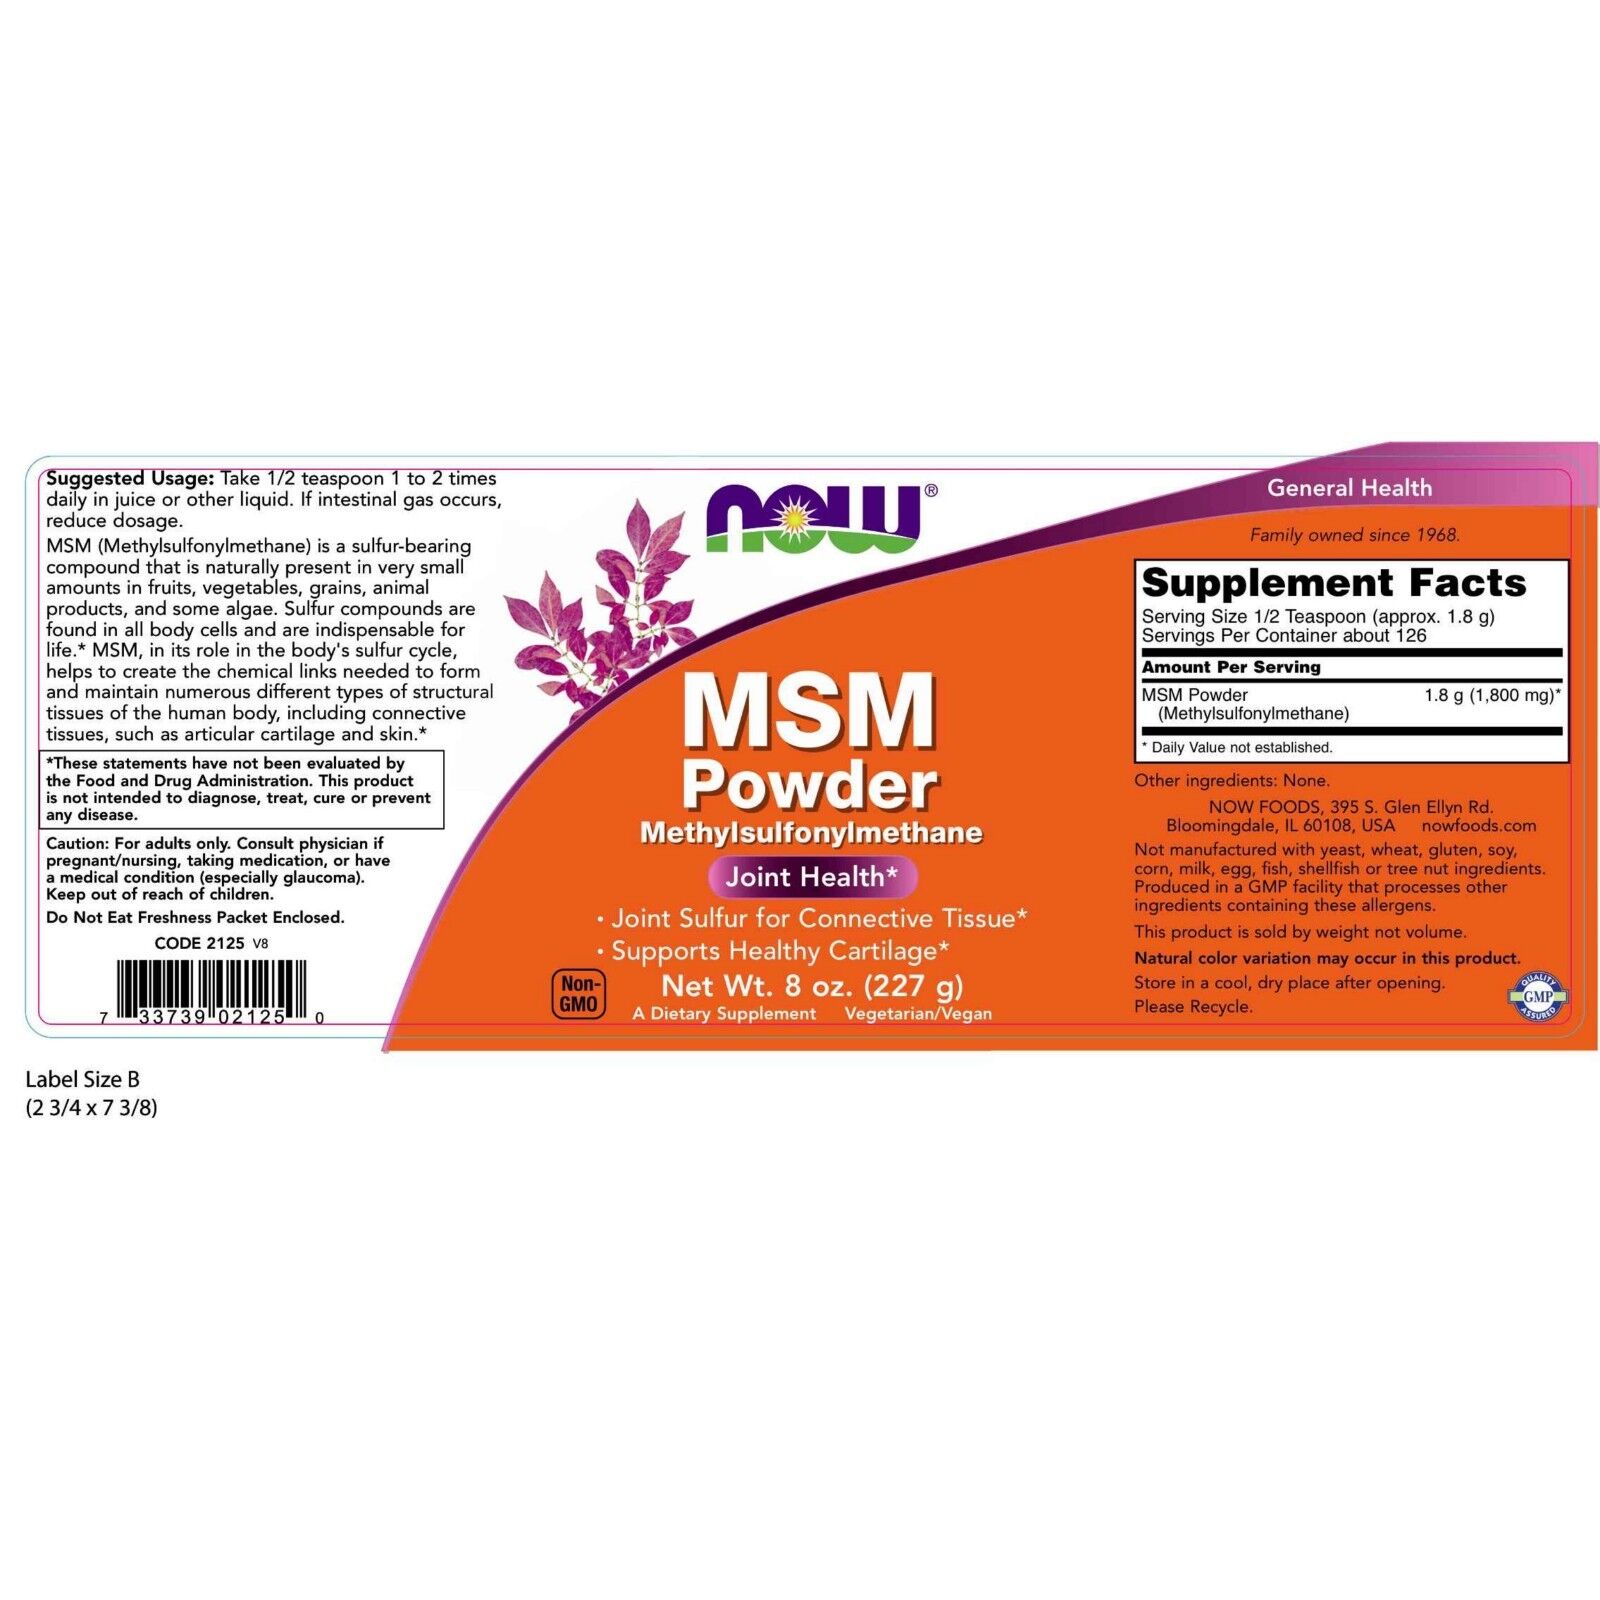 NOW Foods MSM, 1800 mg, 8 oz Powder